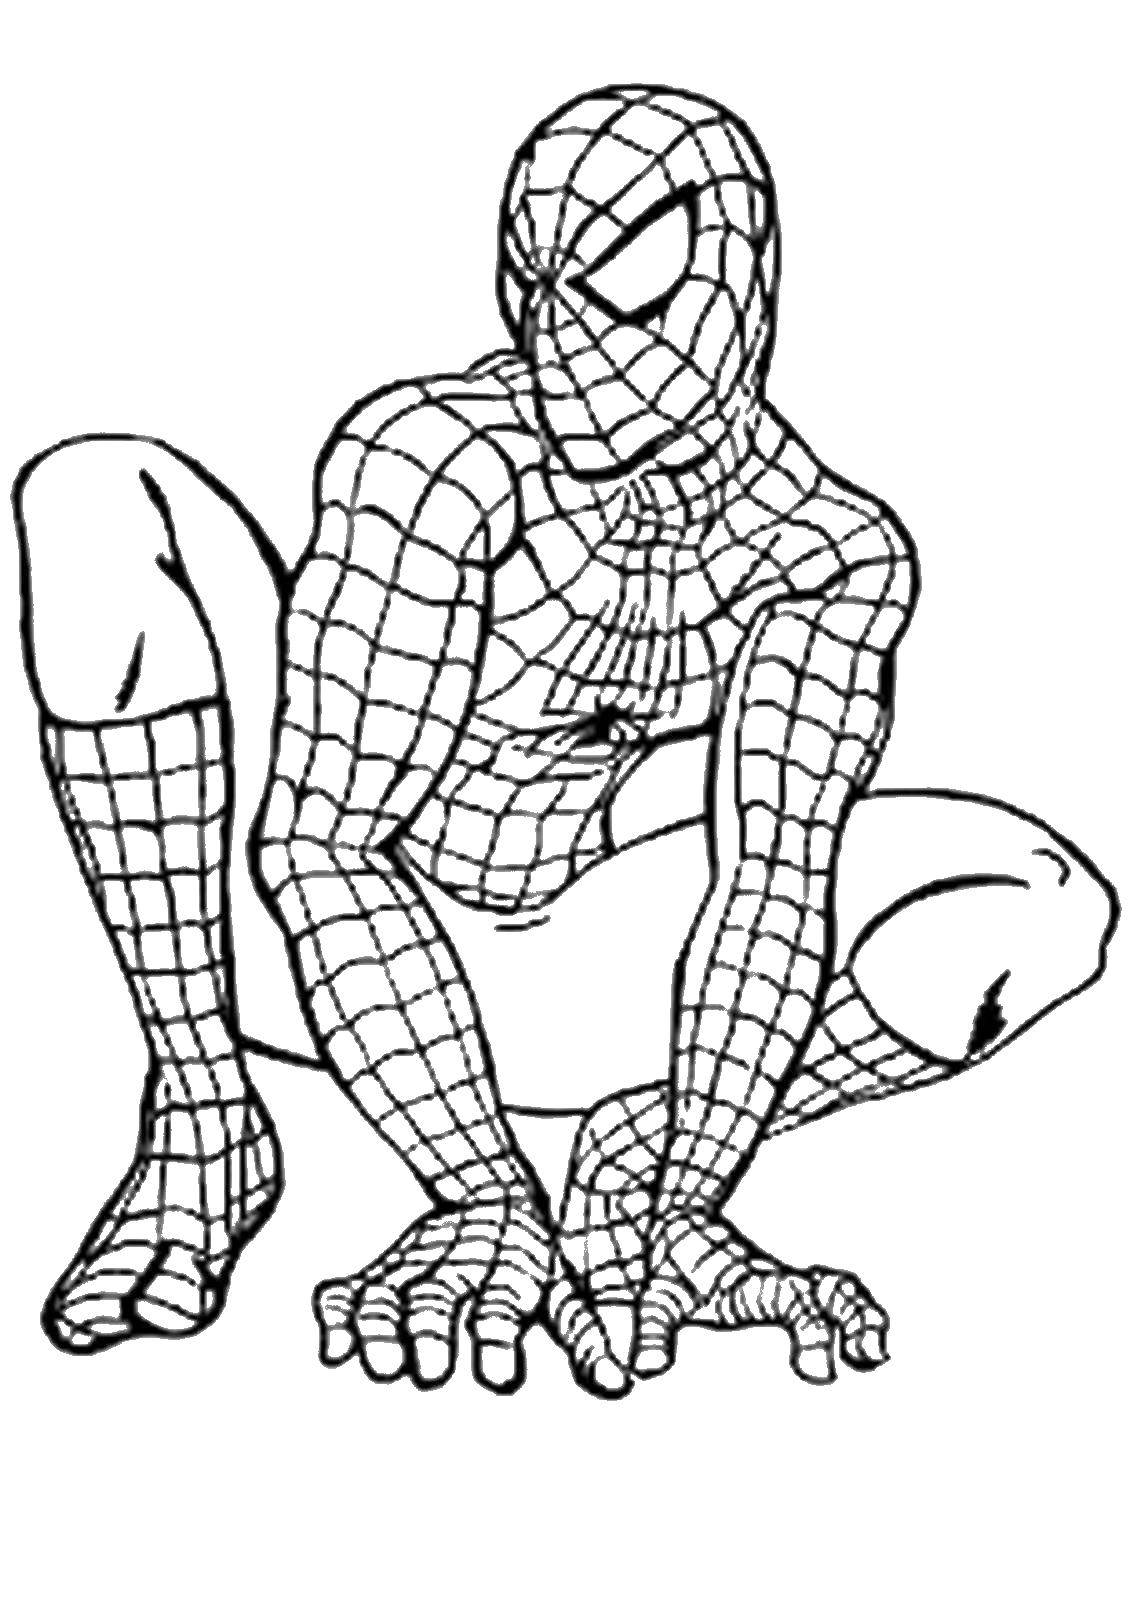 Название: Раскраска Человек паук. Категория: Для мальчиков. Теги: мультфильмы, для мальчиков, человек паук.